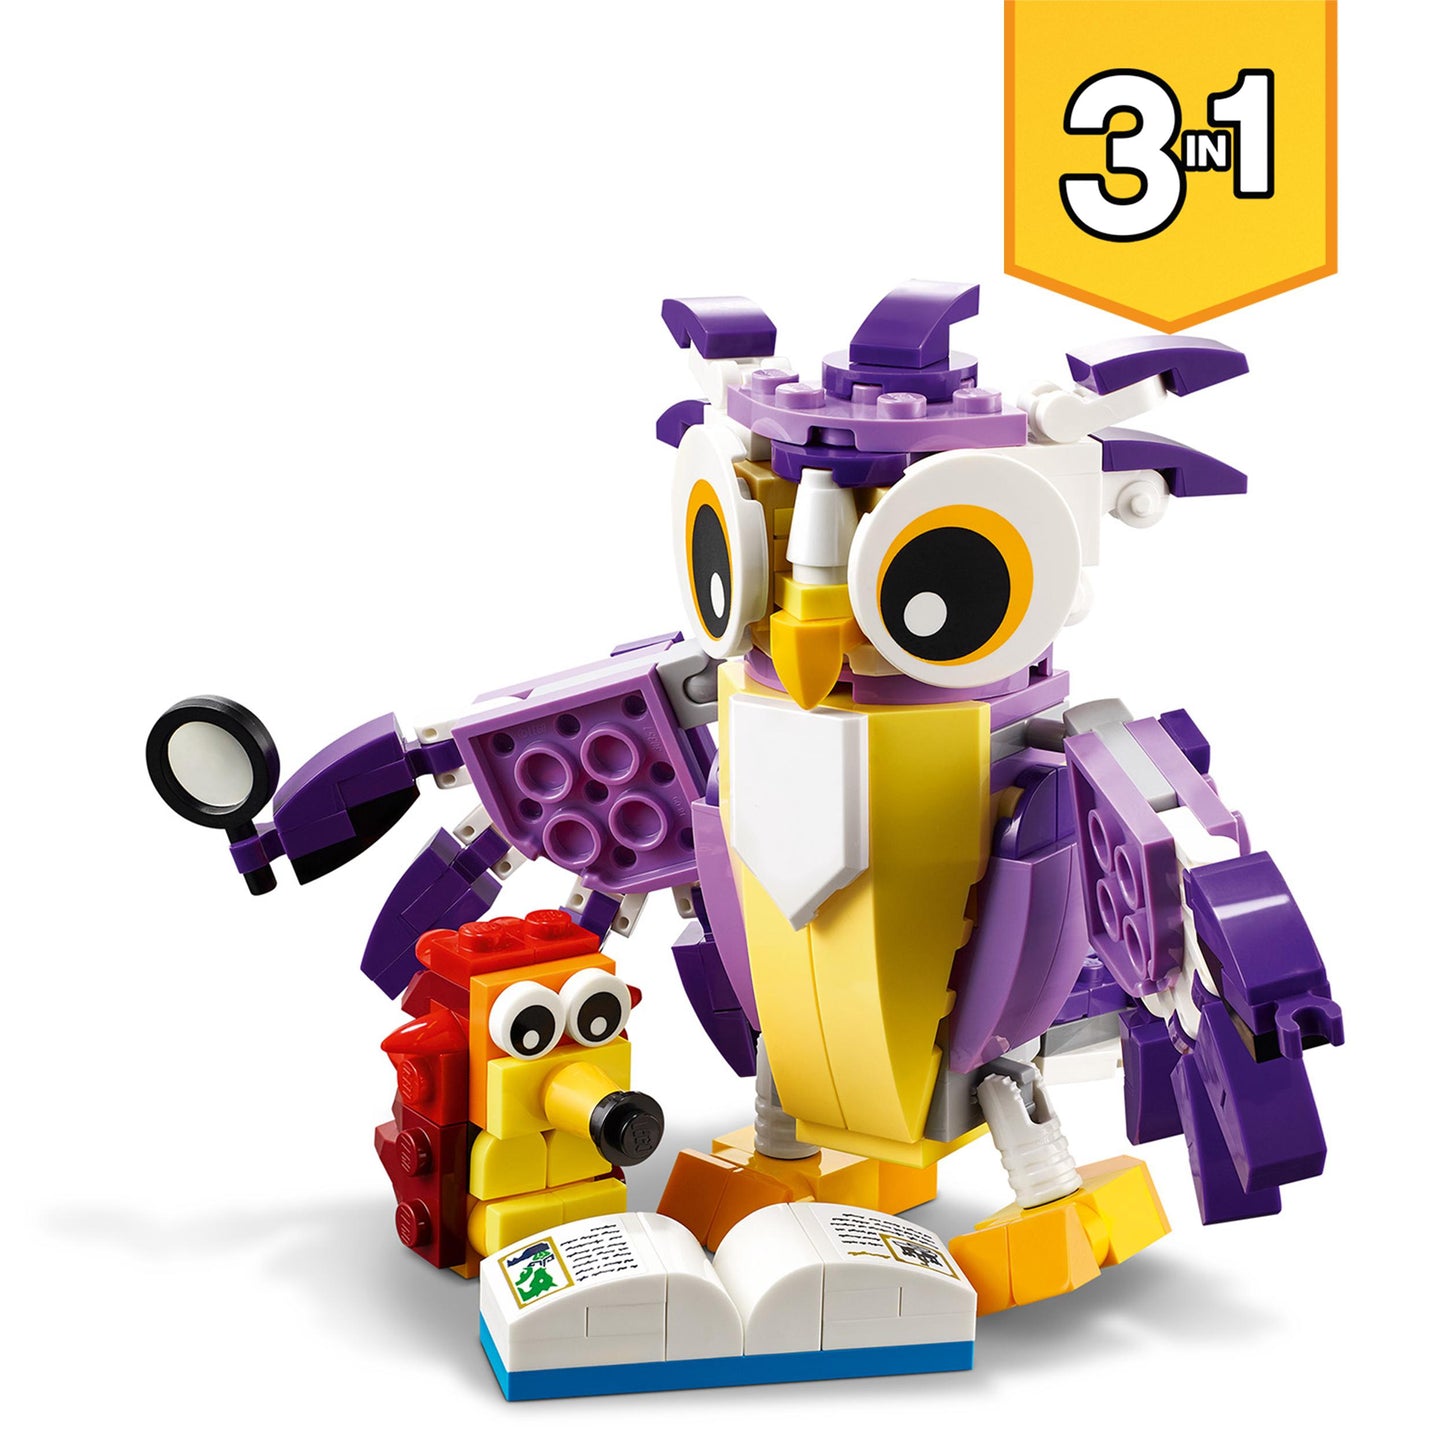 31125 LEGO Creator - Creature della foresta fantasy